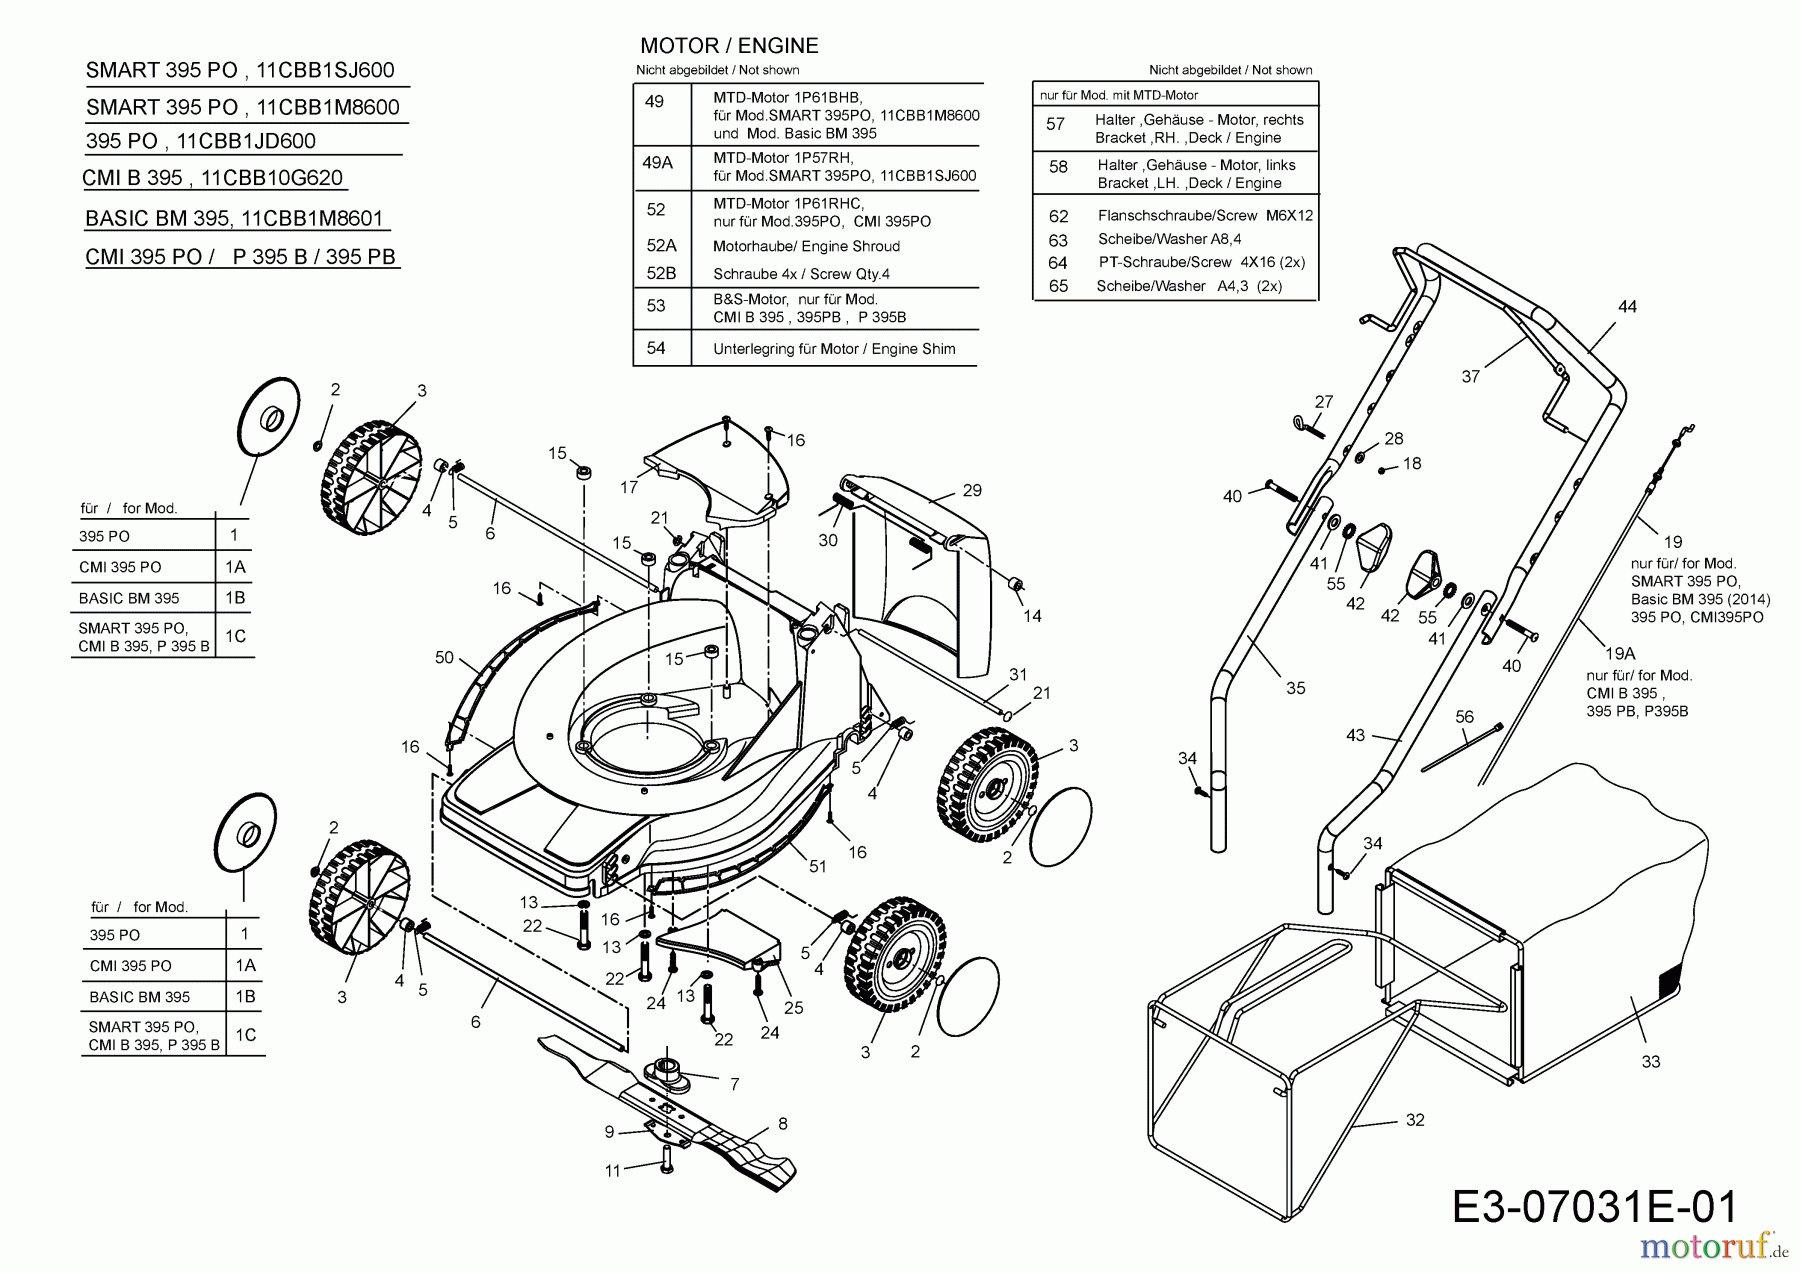  Basic Motormäher Basic BM 395 11CBB1M8601  (2016) Grundgerät